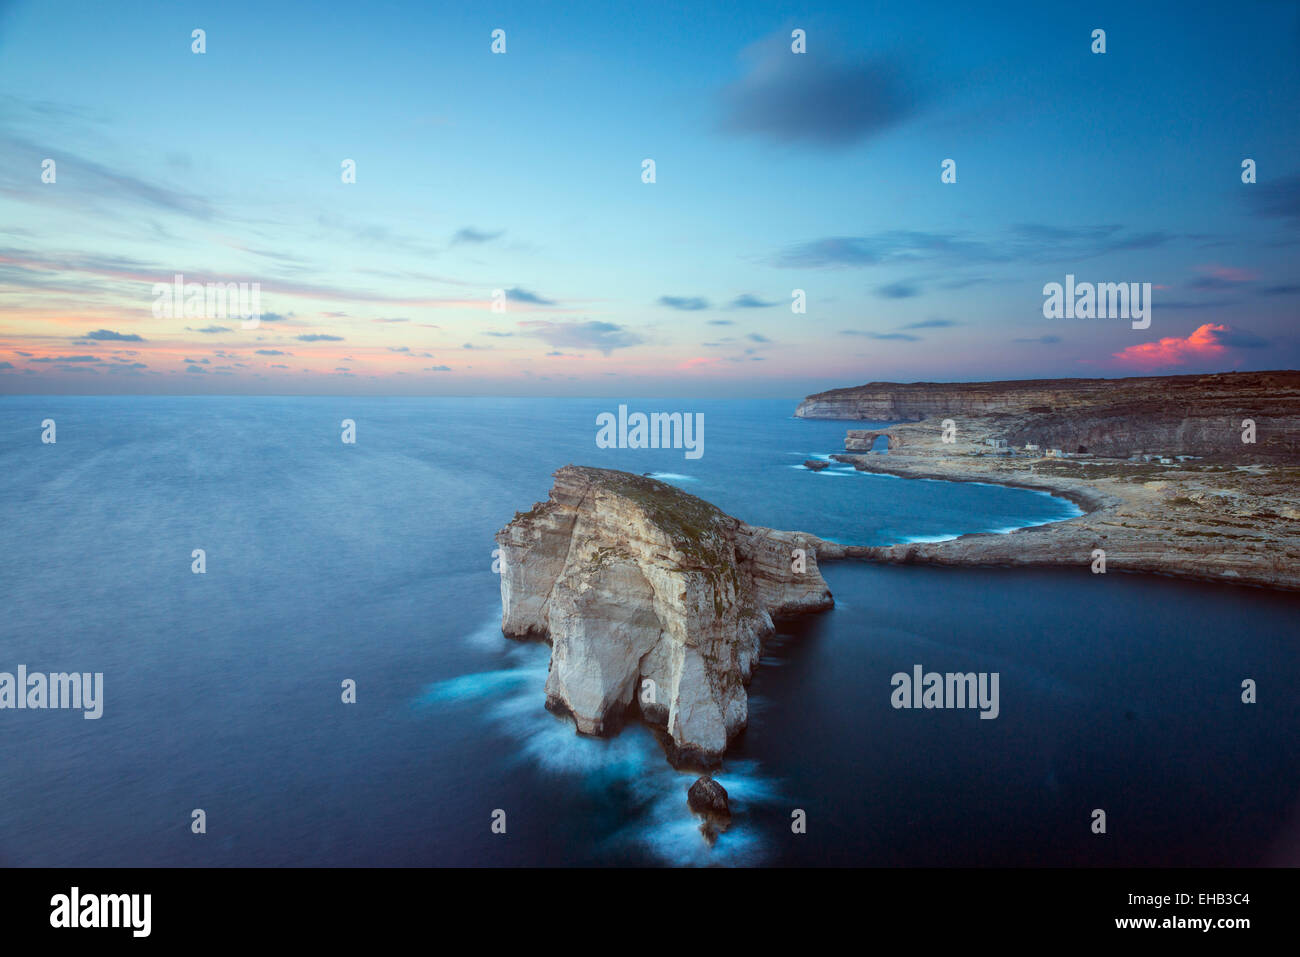 L'Europe méditerranéenne, Malte, Gozo Island, la baie de Dwerja Champignon, Rock et la fenêtre d'Azur arche naturelle Banque D'Images